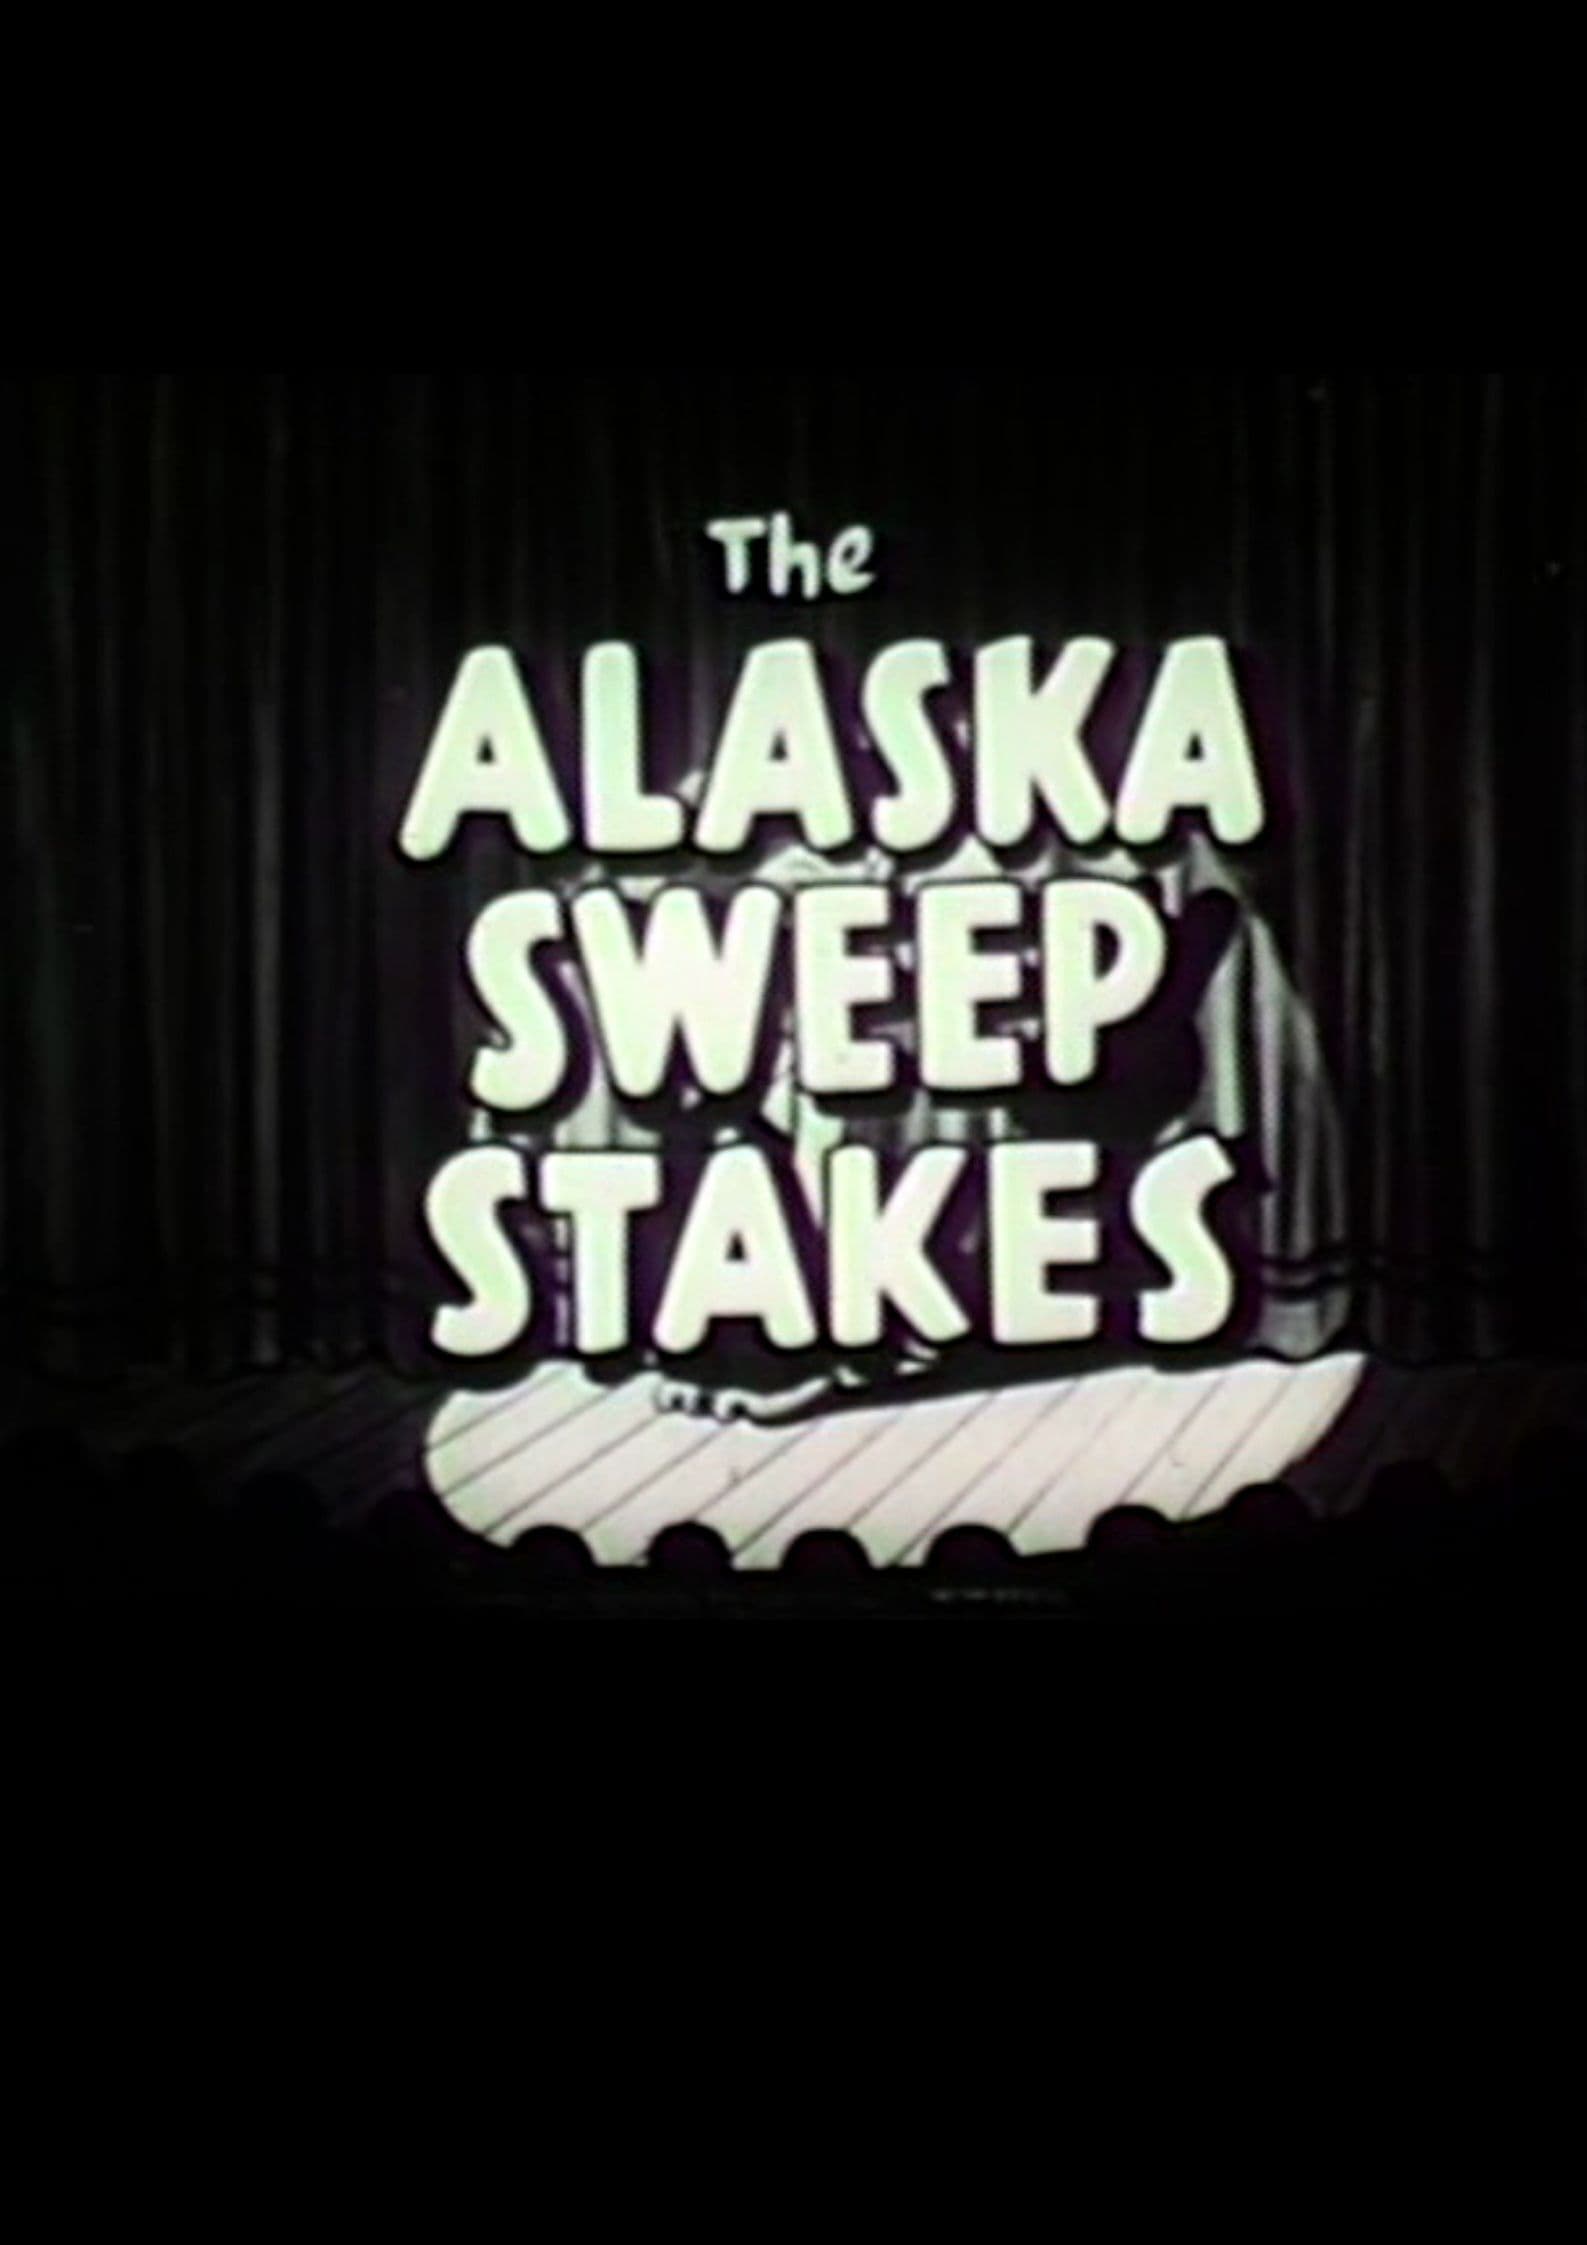 Alaska Sweepstakes